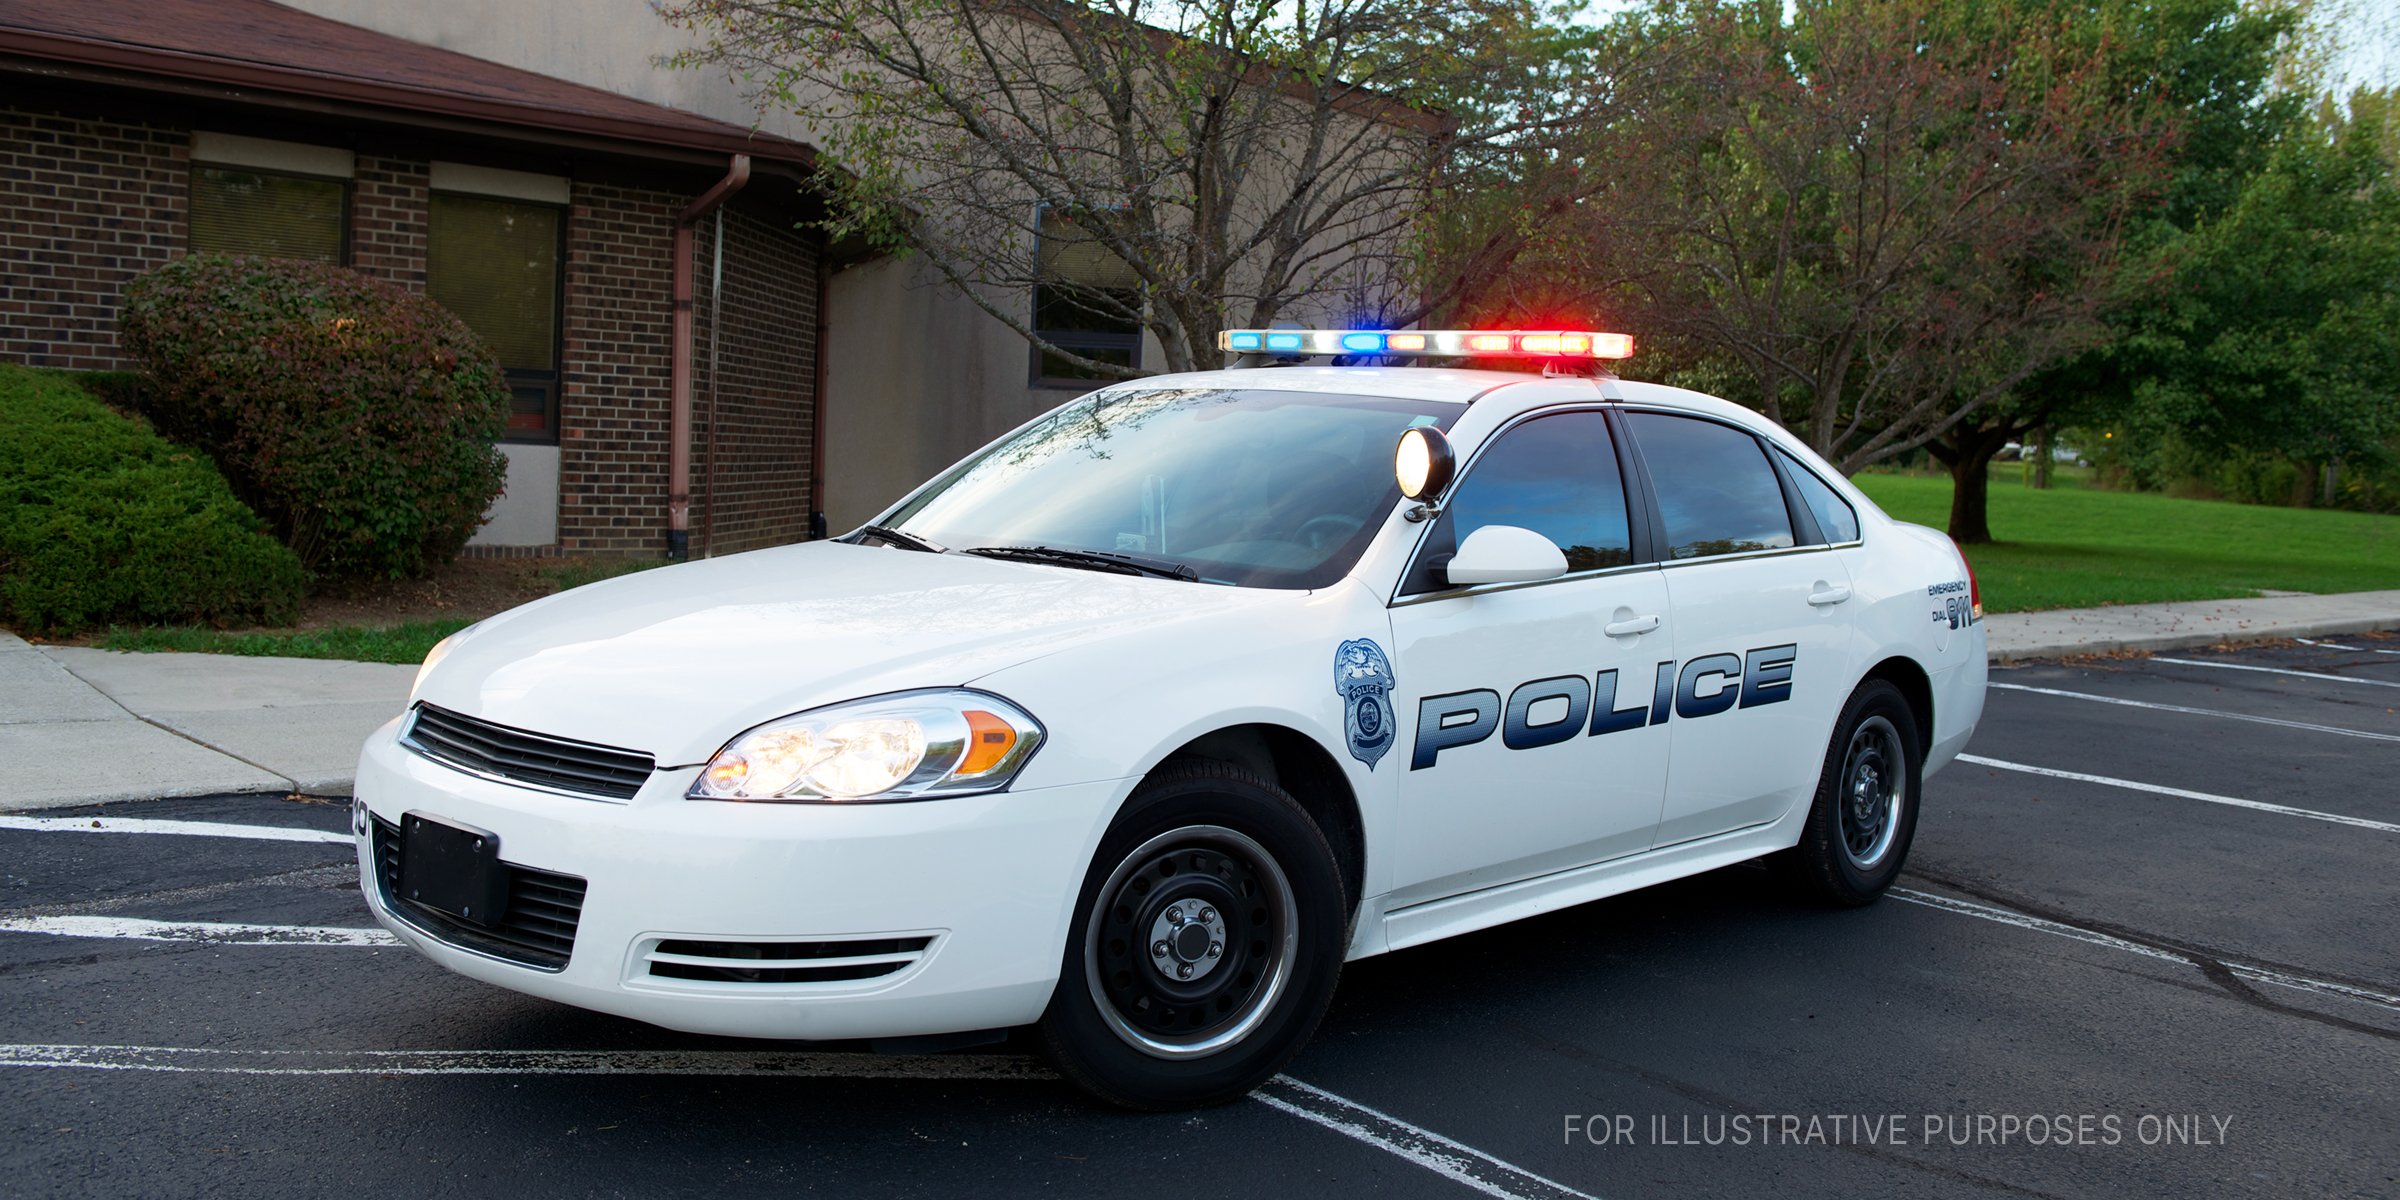 Ein Polizeiauto. | Quelle: Shutterstock